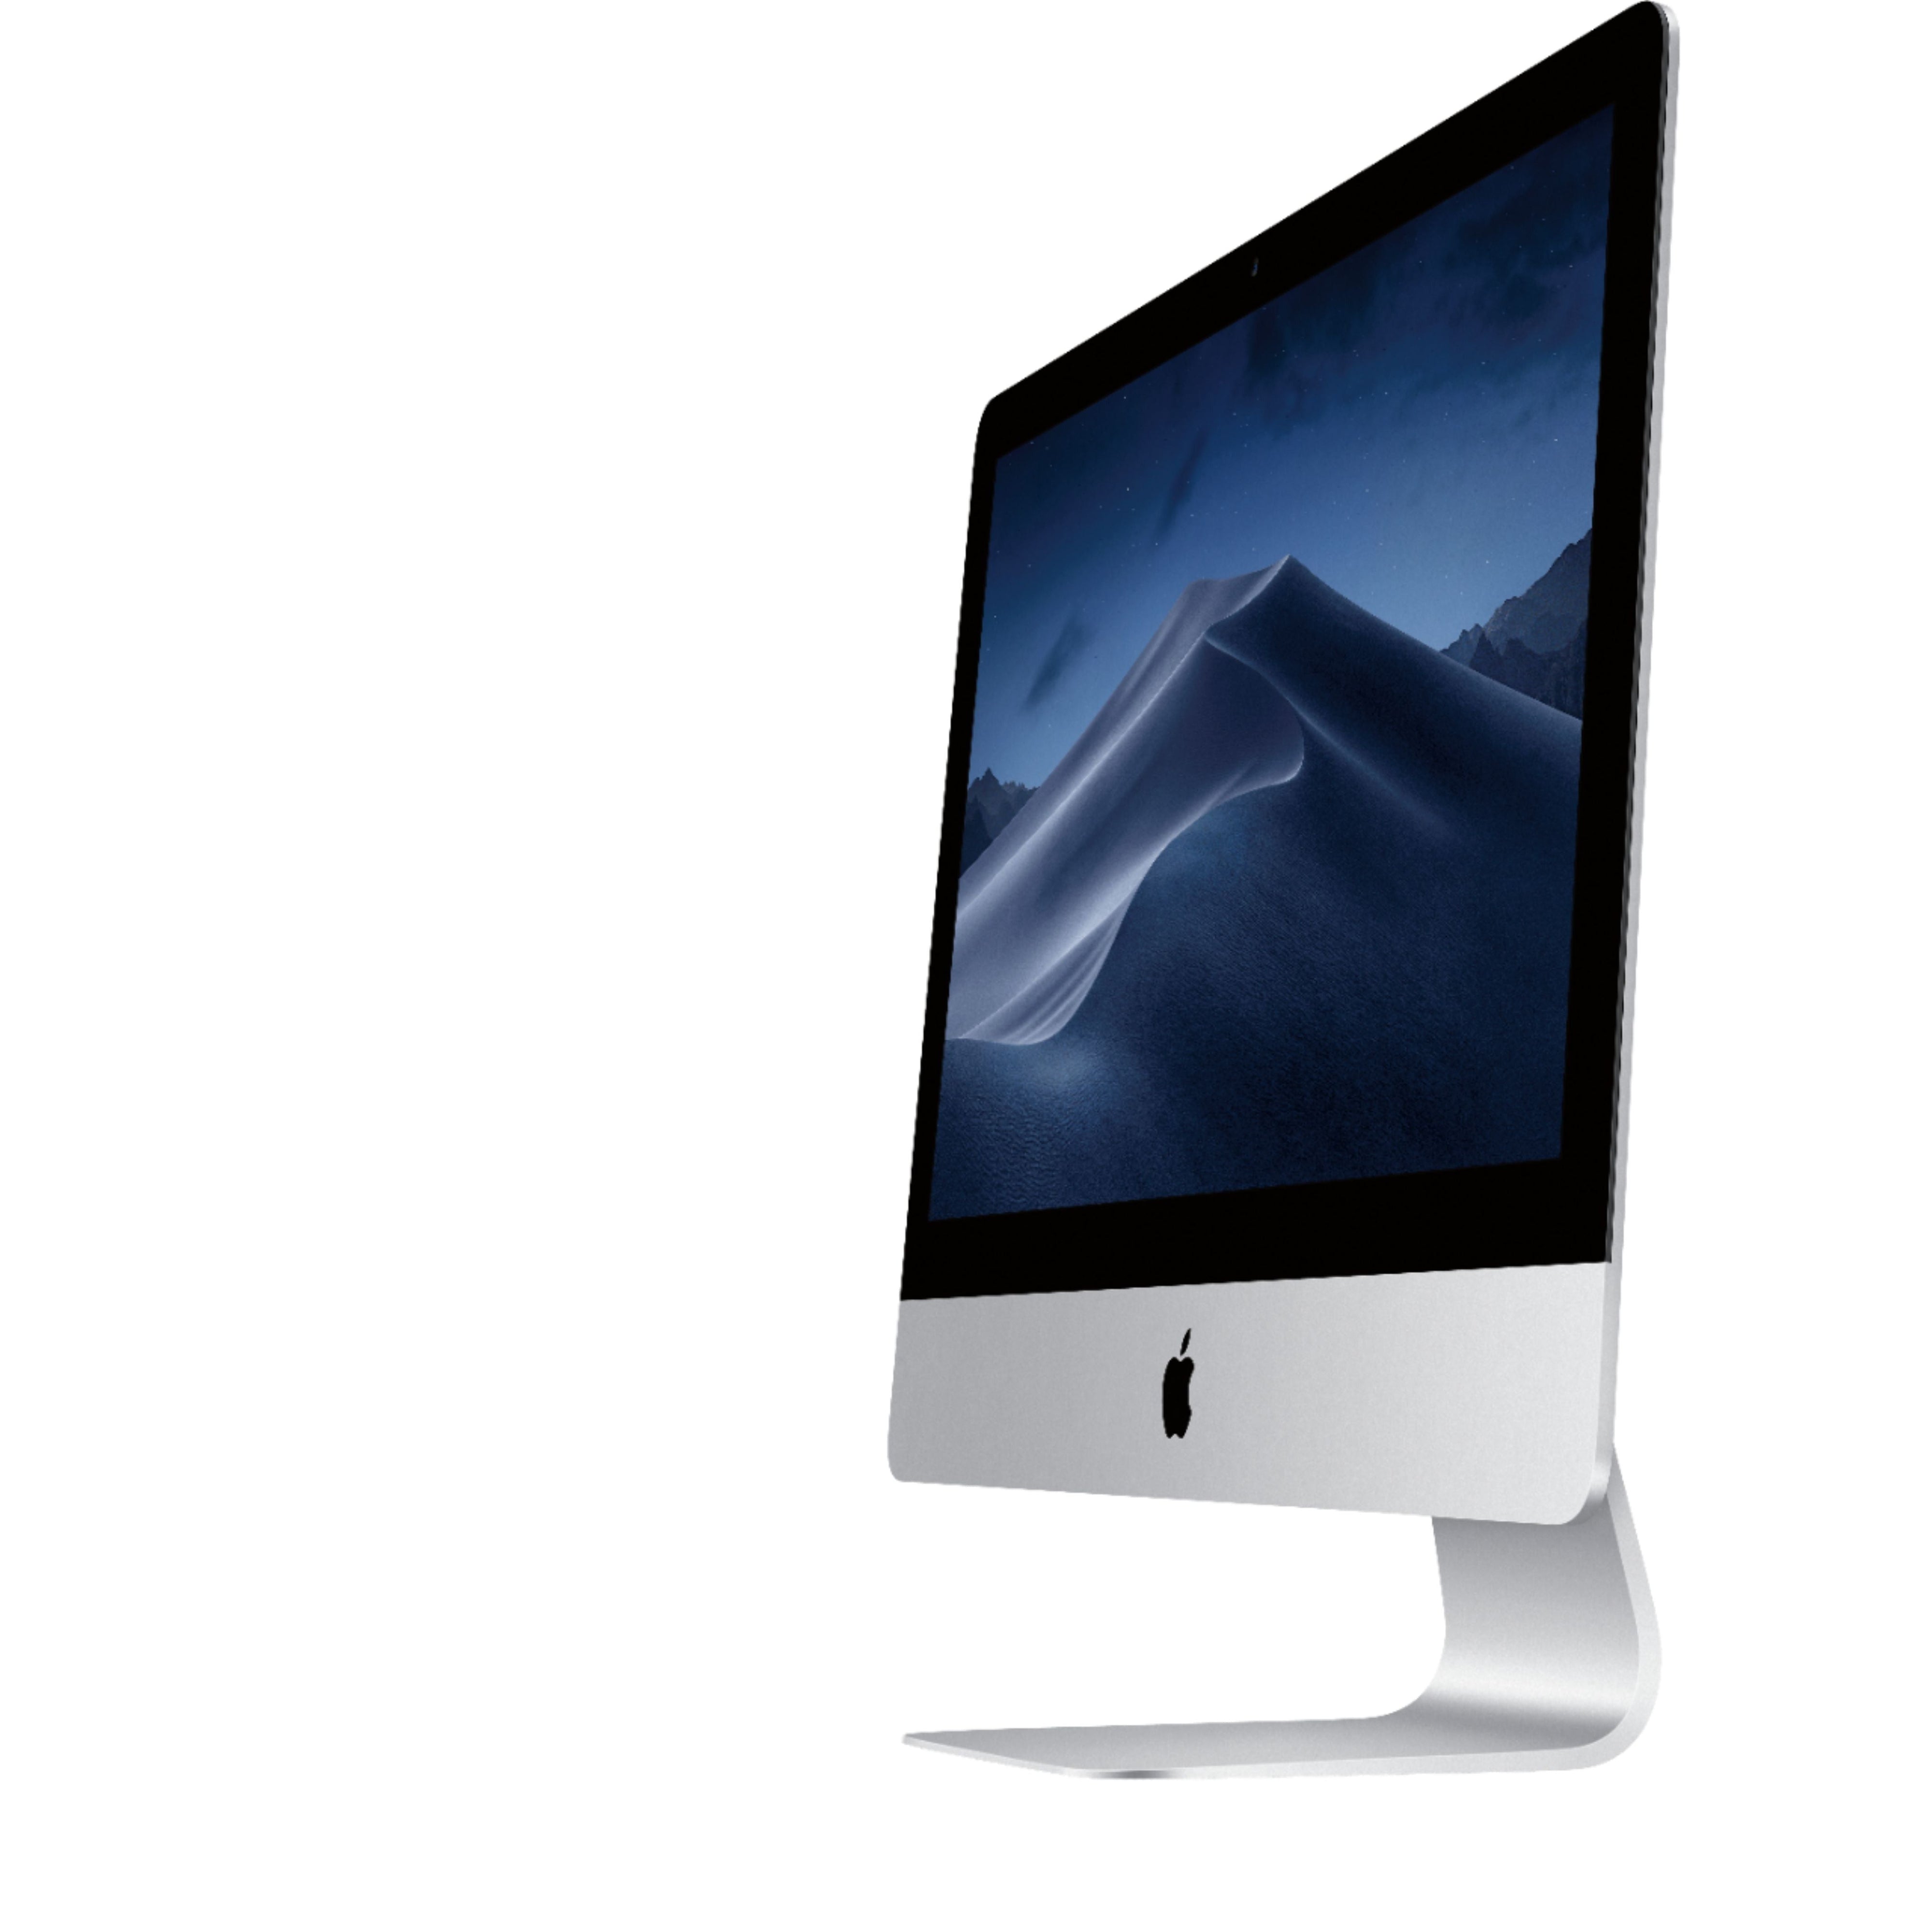 Apple iMac 21.5'' MMQA2LL/A (2017), Intel Core i5 8GB RAM 256GB SSD - Silver - Refurbished Good